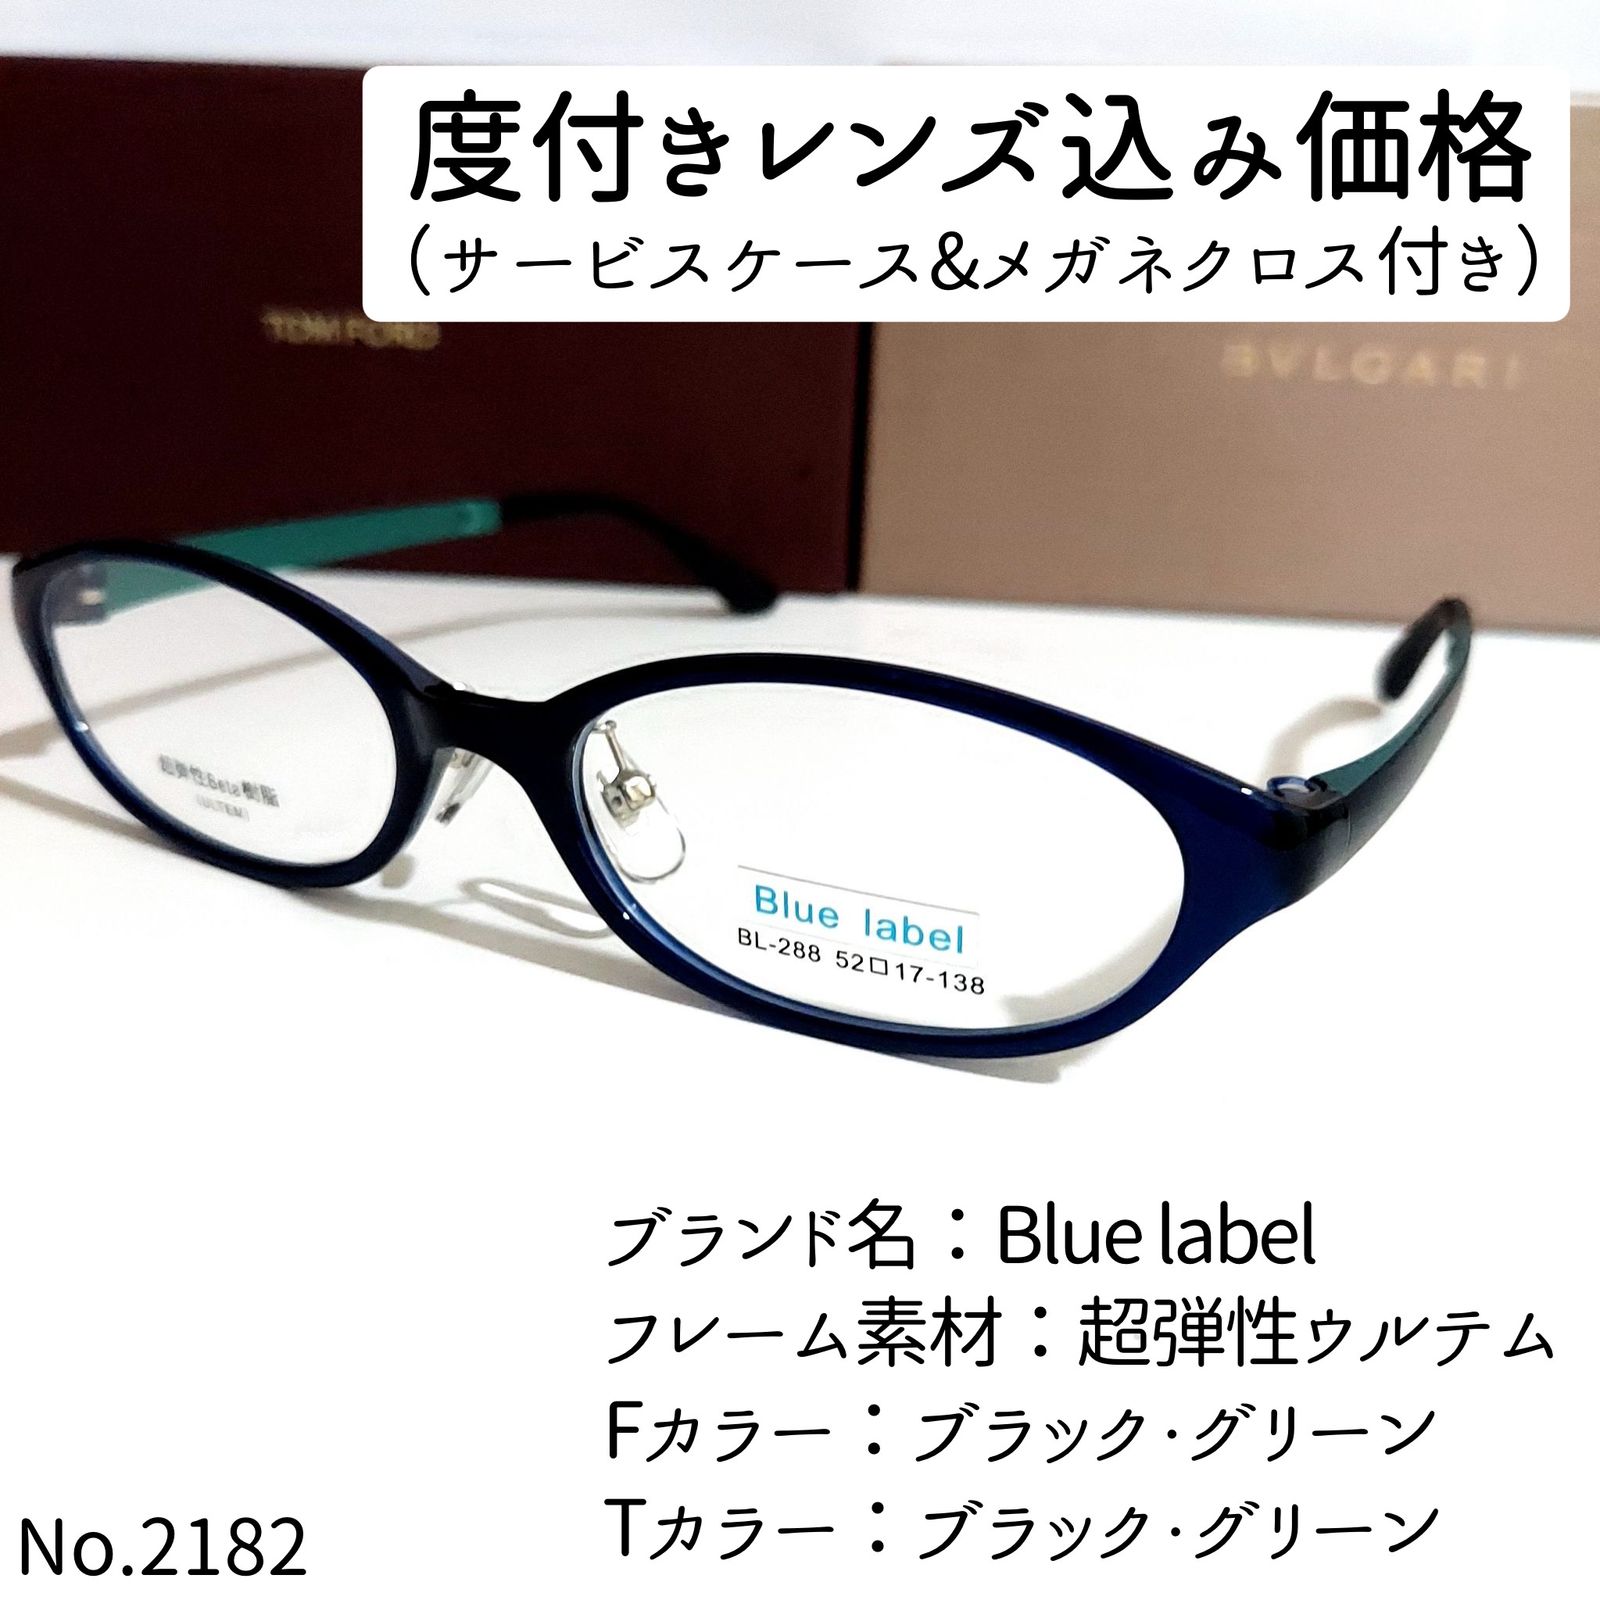 No.2182-メガネ Blue label【フレームのみ価格】-